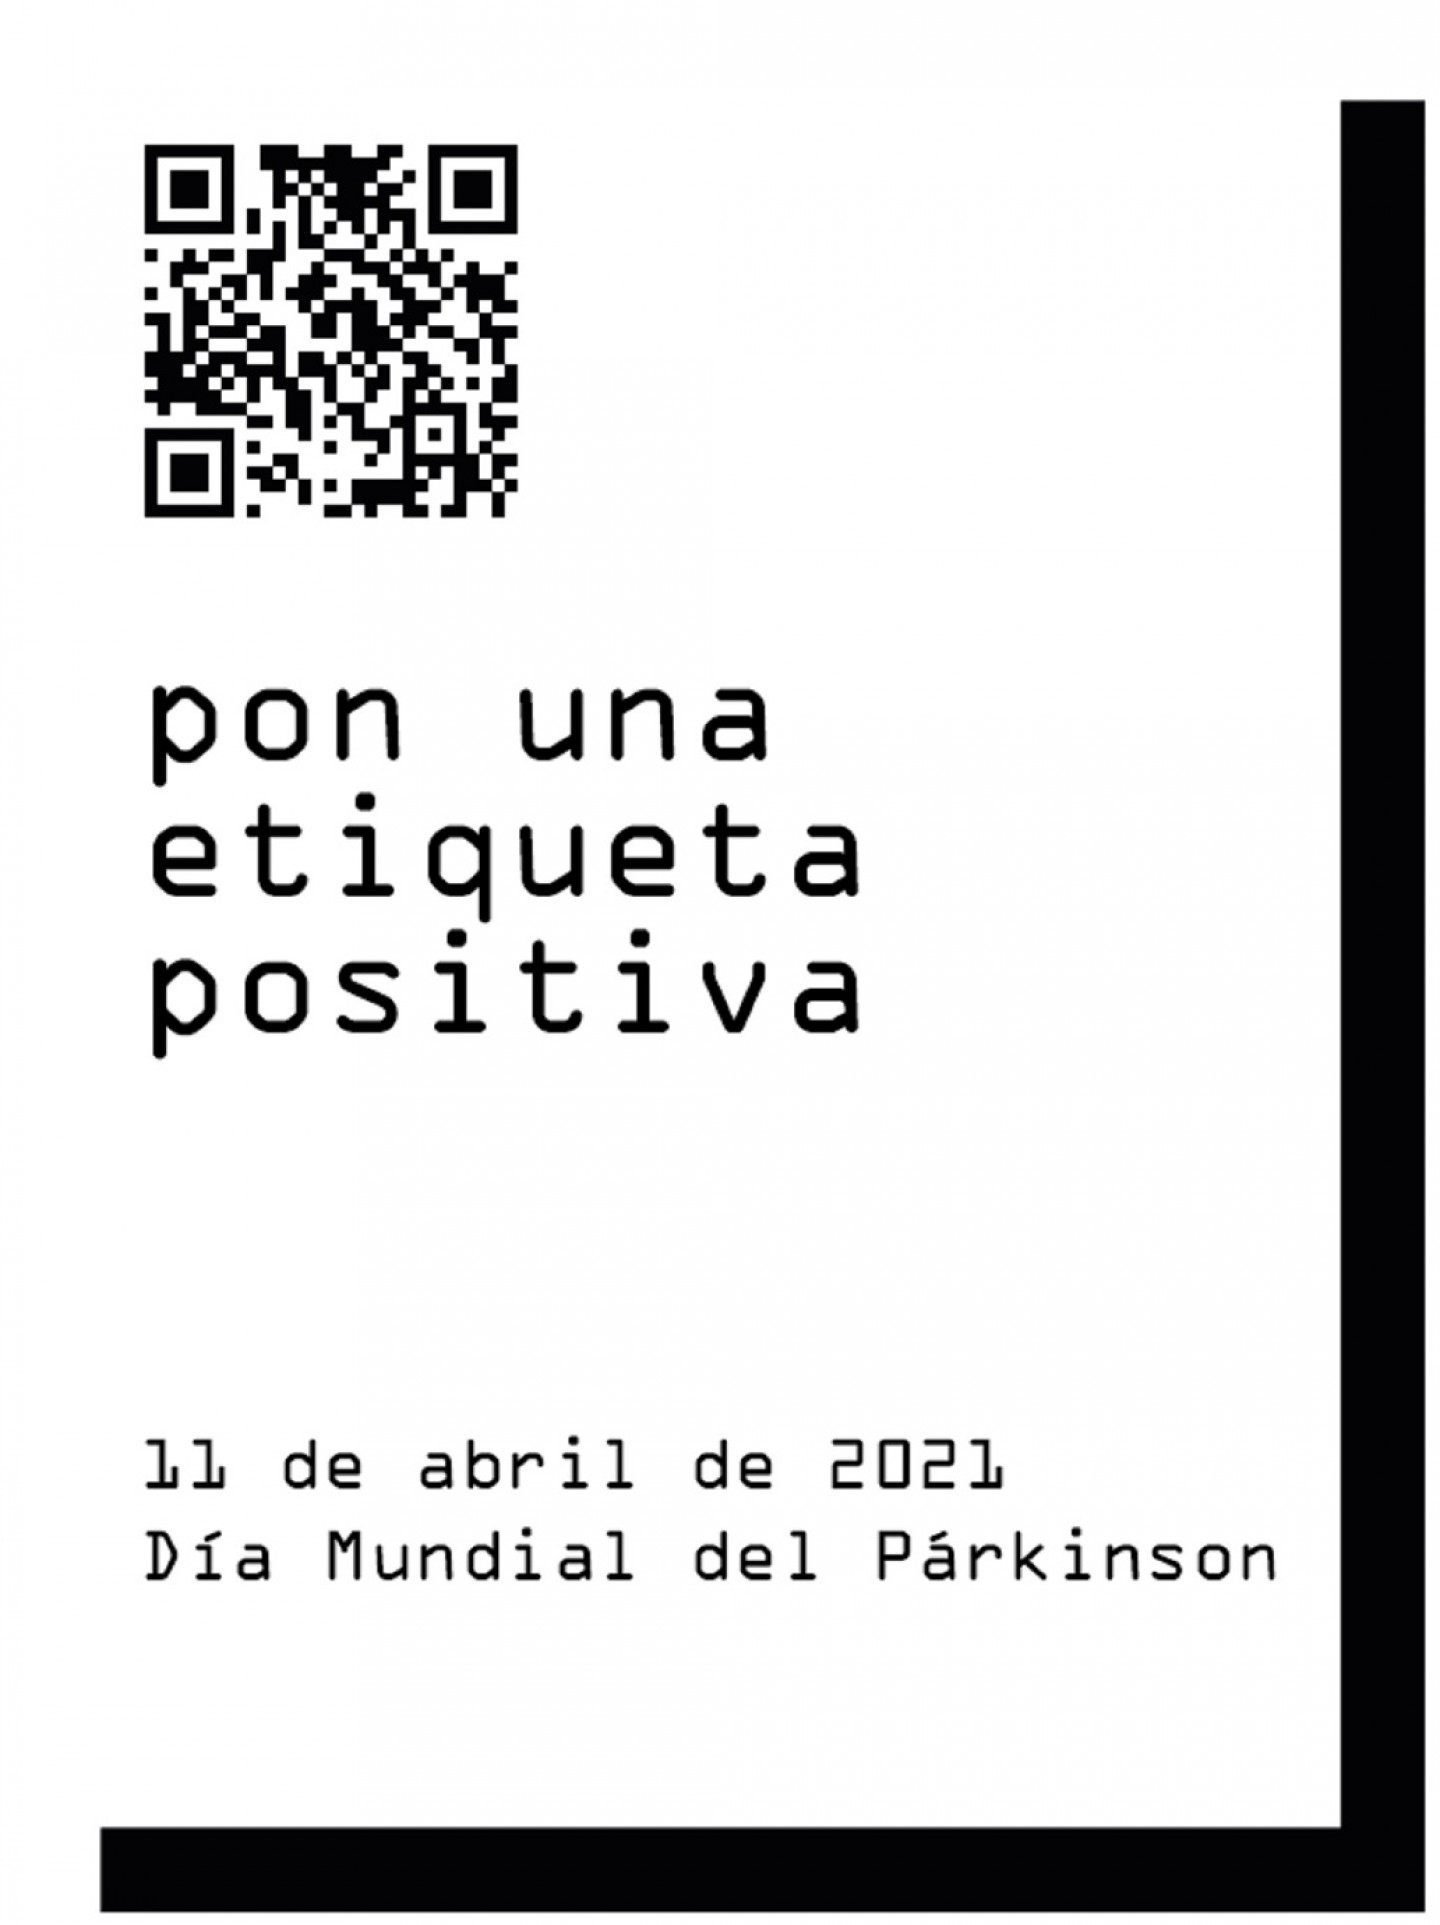 Día Mundial del Párkinson con el lema "pon una etiqueta positiva"